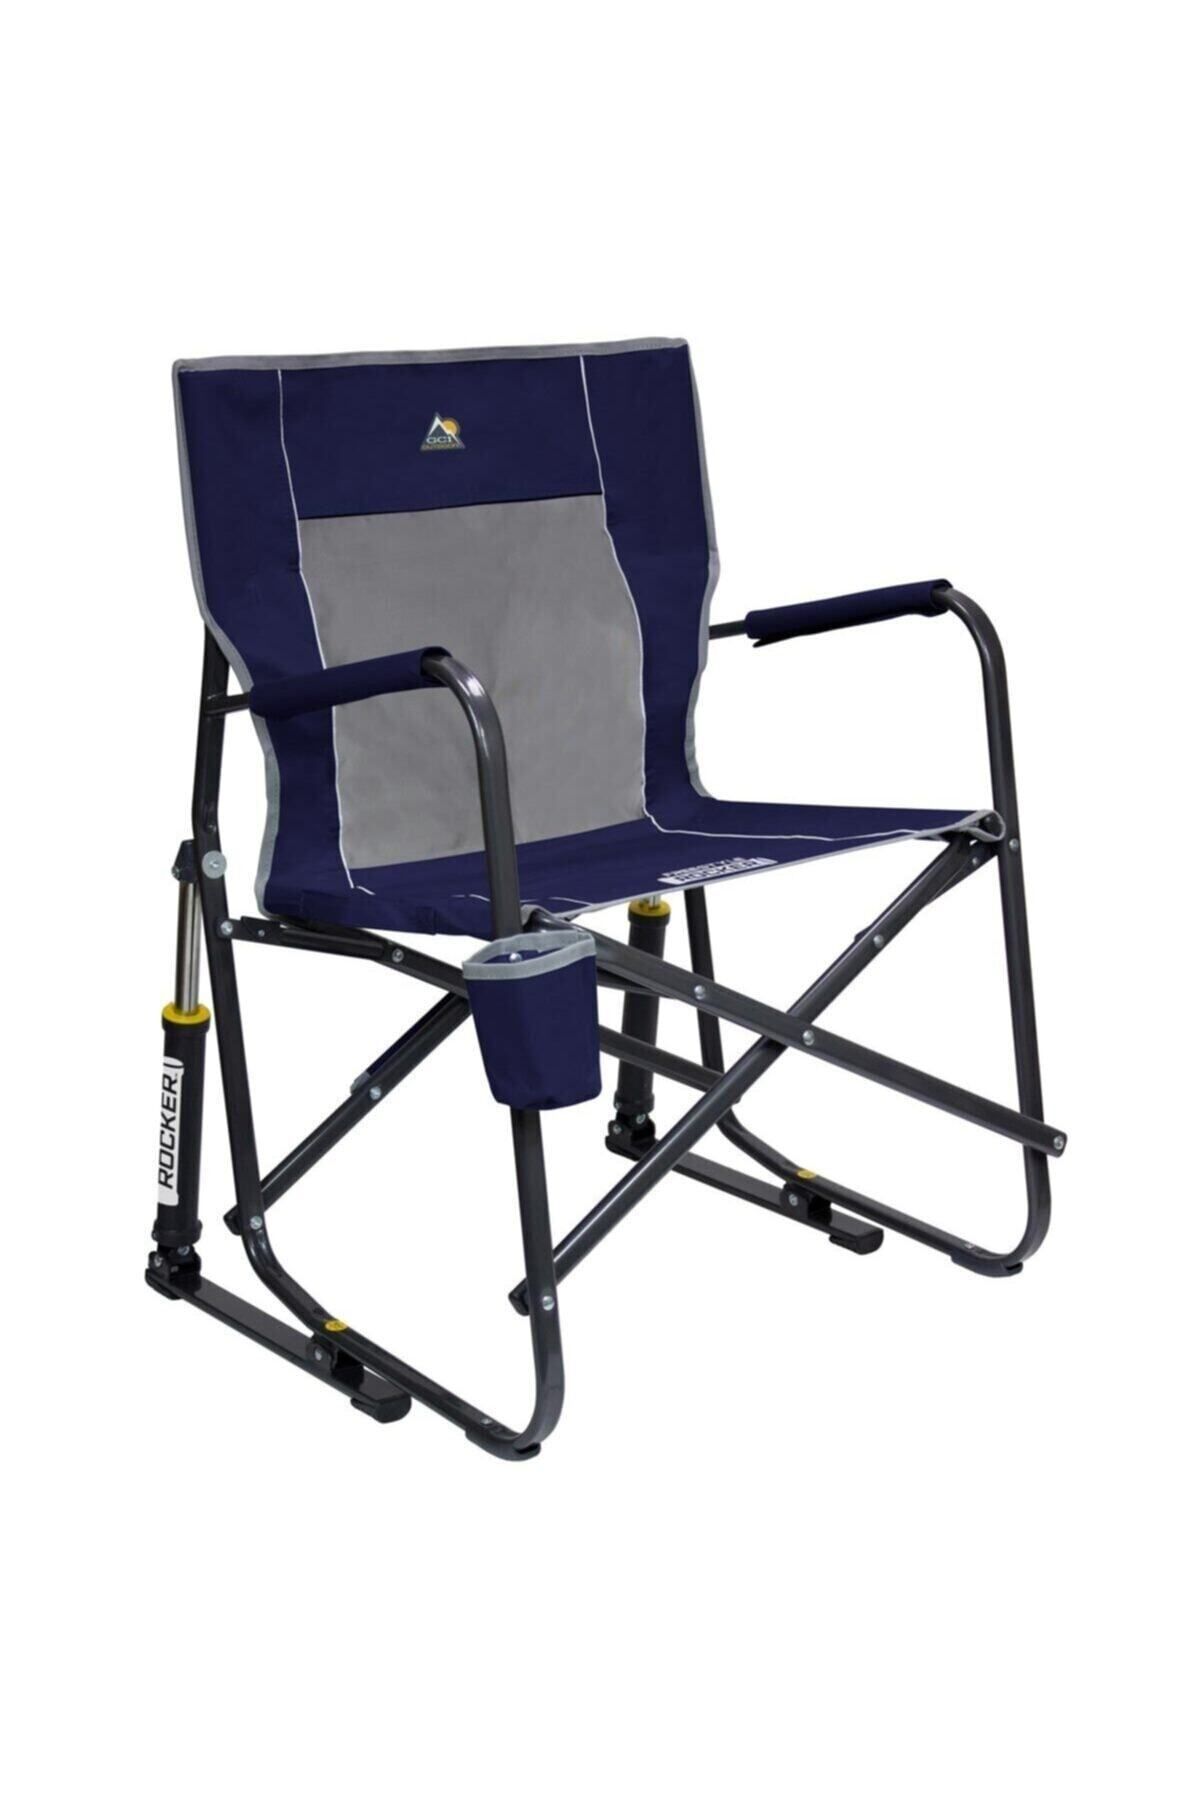 GCI Outdoor Gci Freestyle Amortisörlü Katlanır Kamp Sandalyesi Mavi